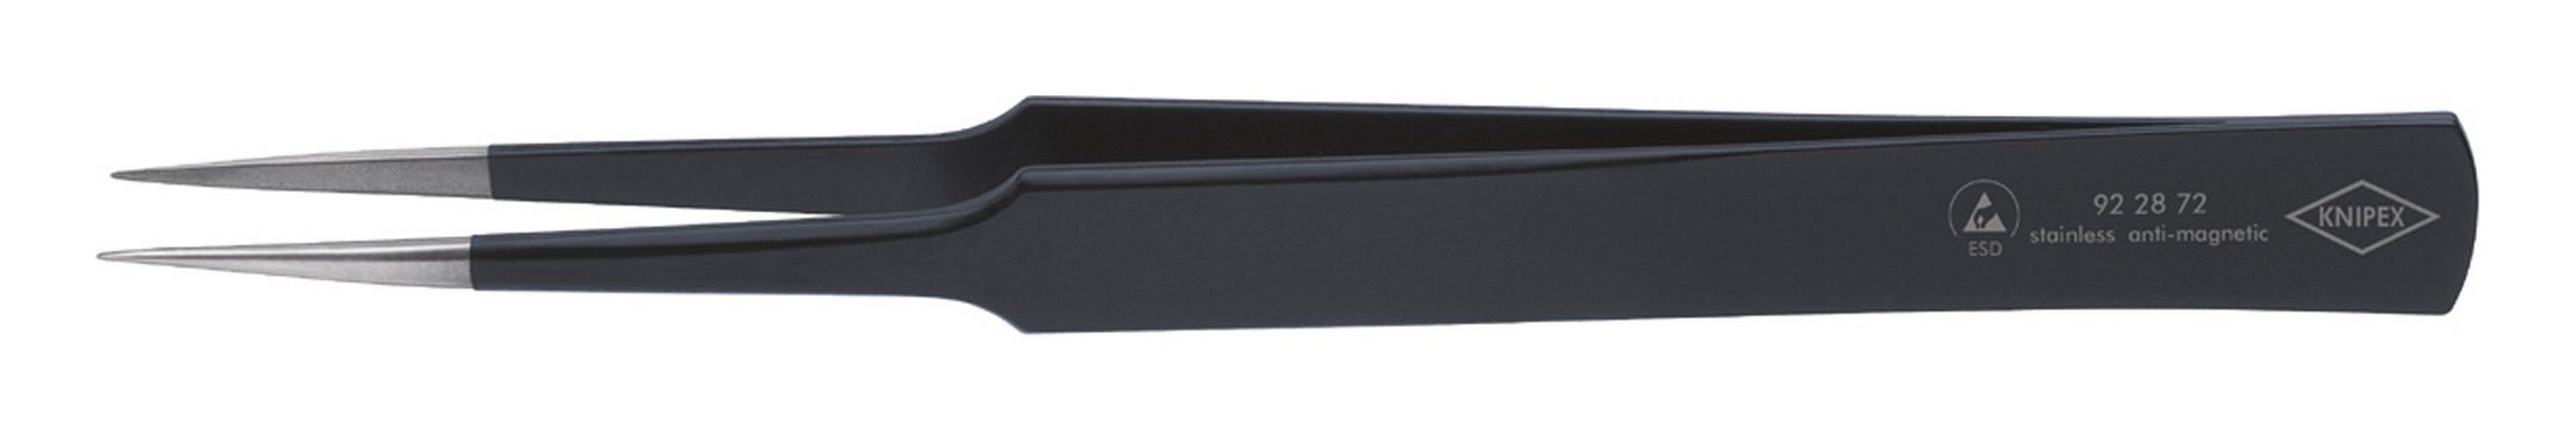 Knipex Pinzette, ESD US-Nadelform 135 schwarz mm